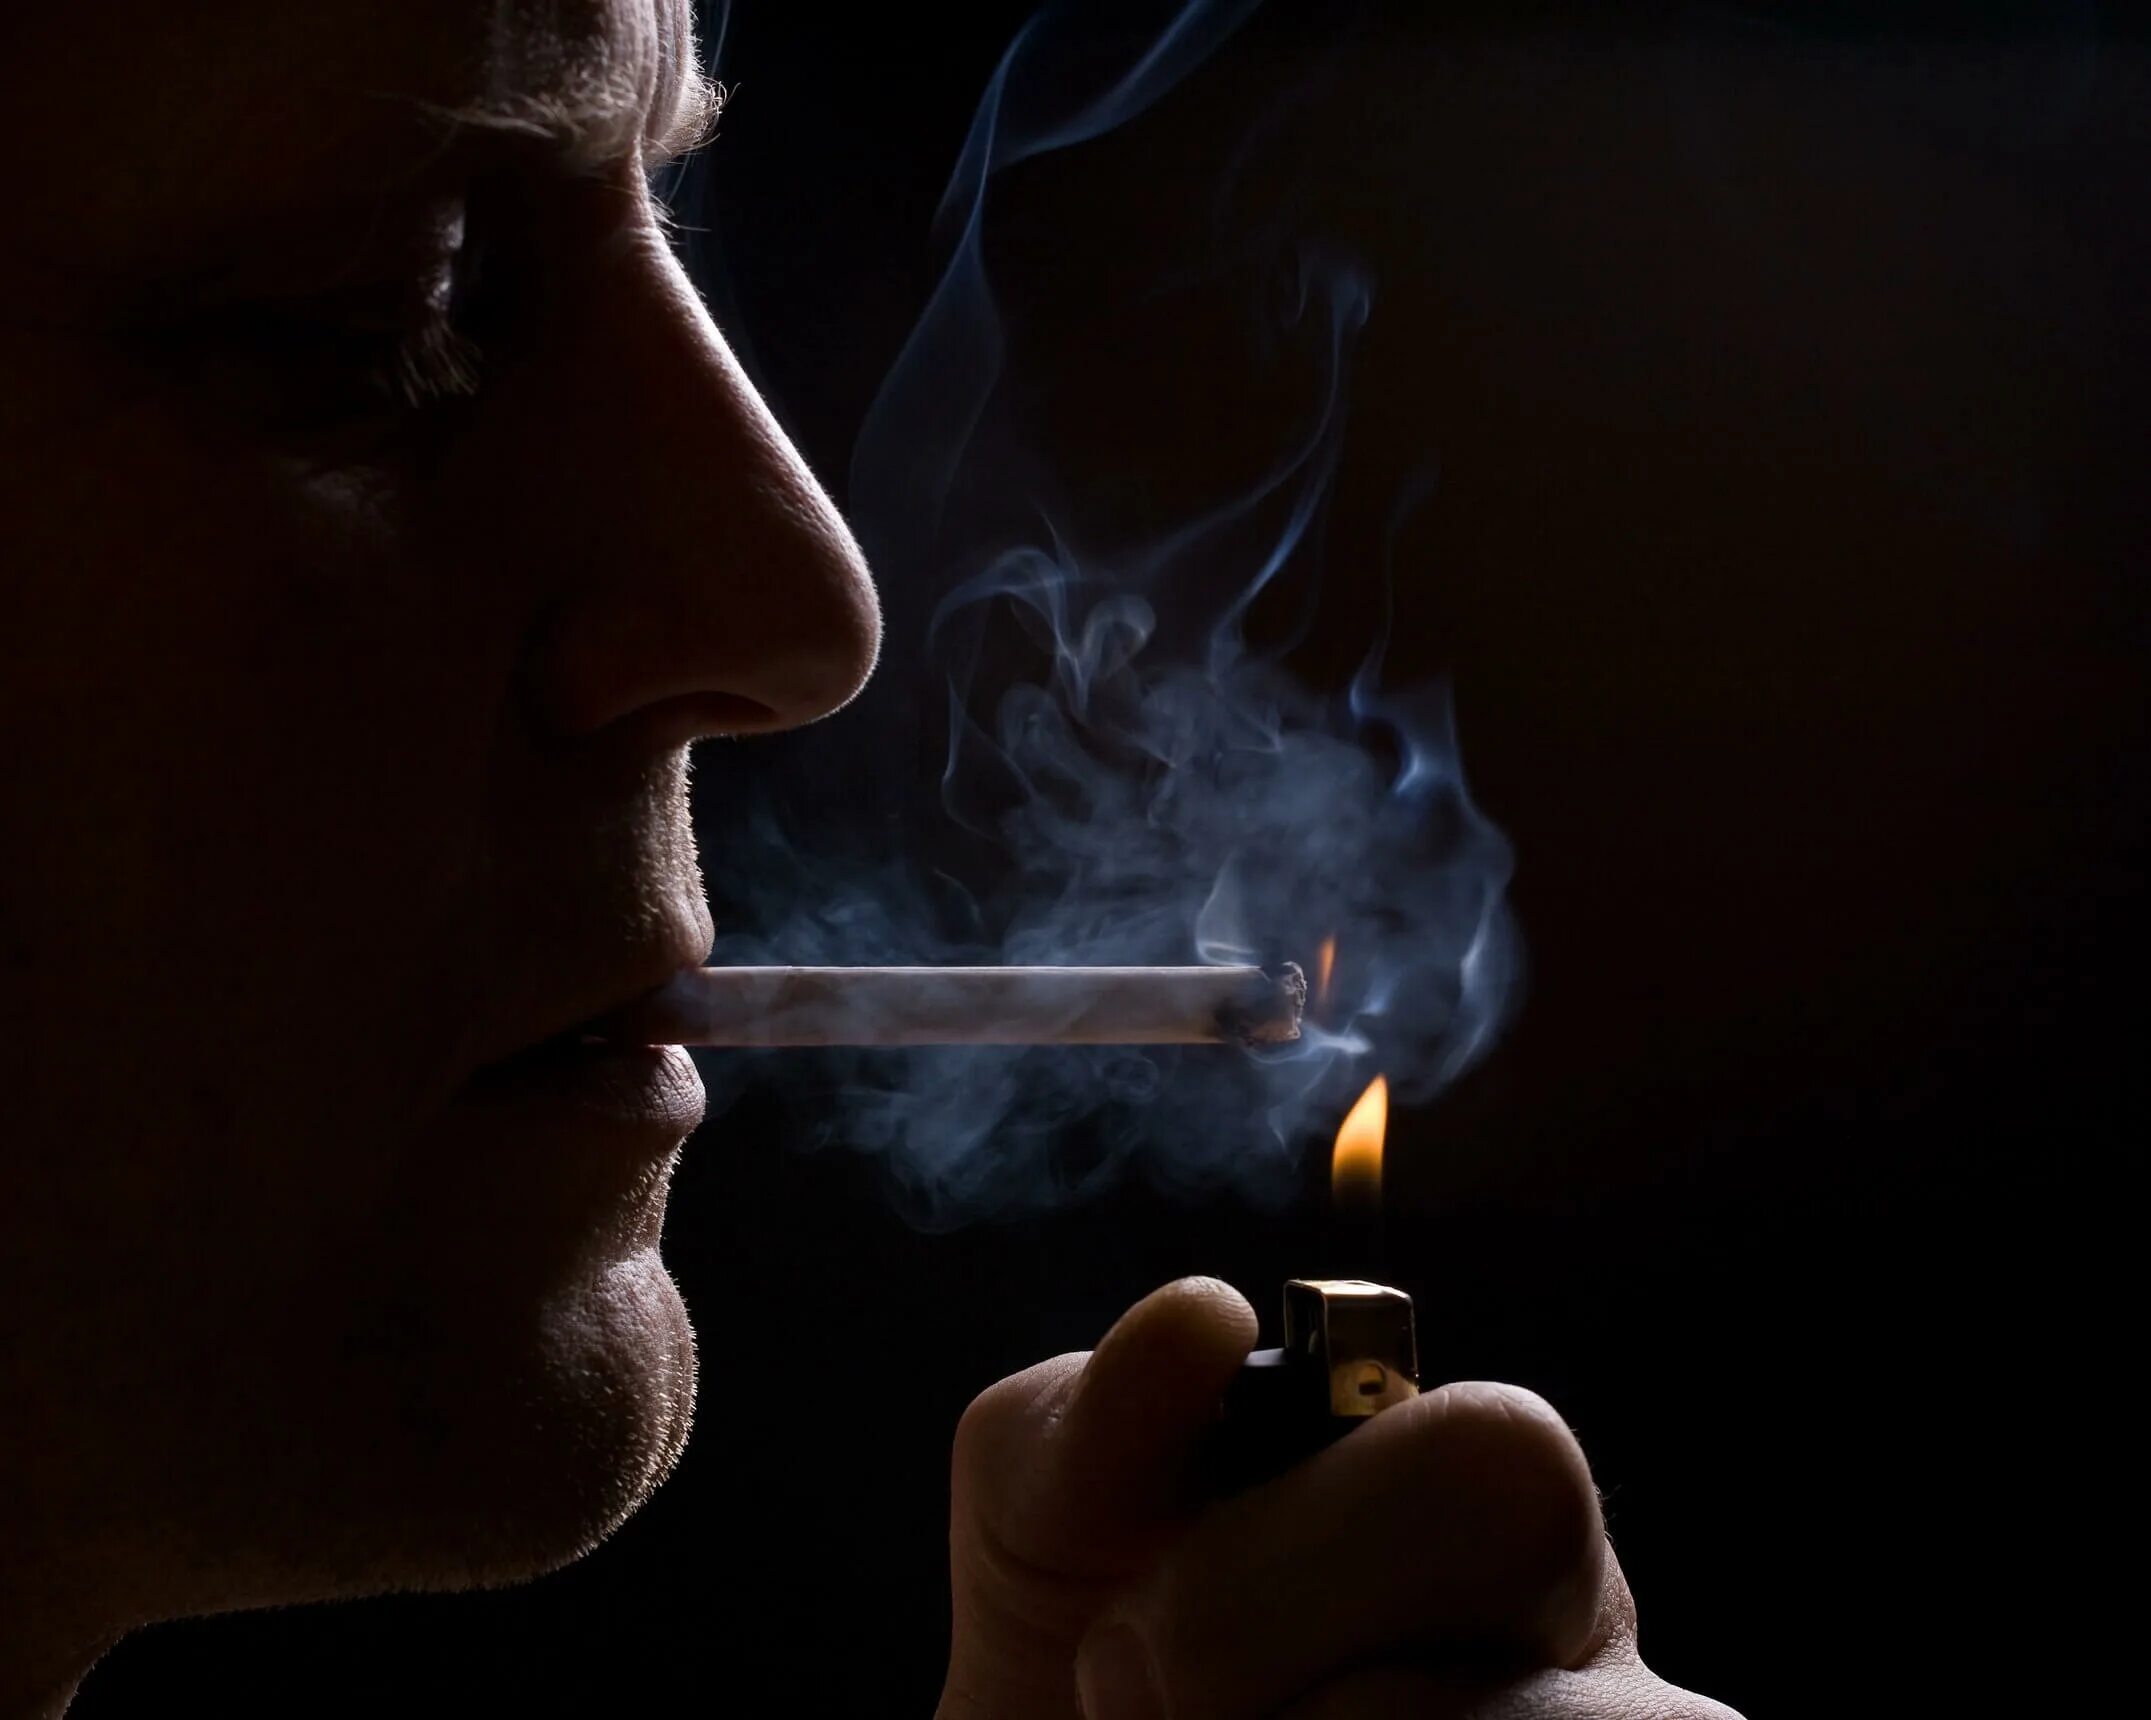 Курящий человек. Человек курит сигарету. Человек крутсигарету. Сигаретный дым дорогой коньяк песня